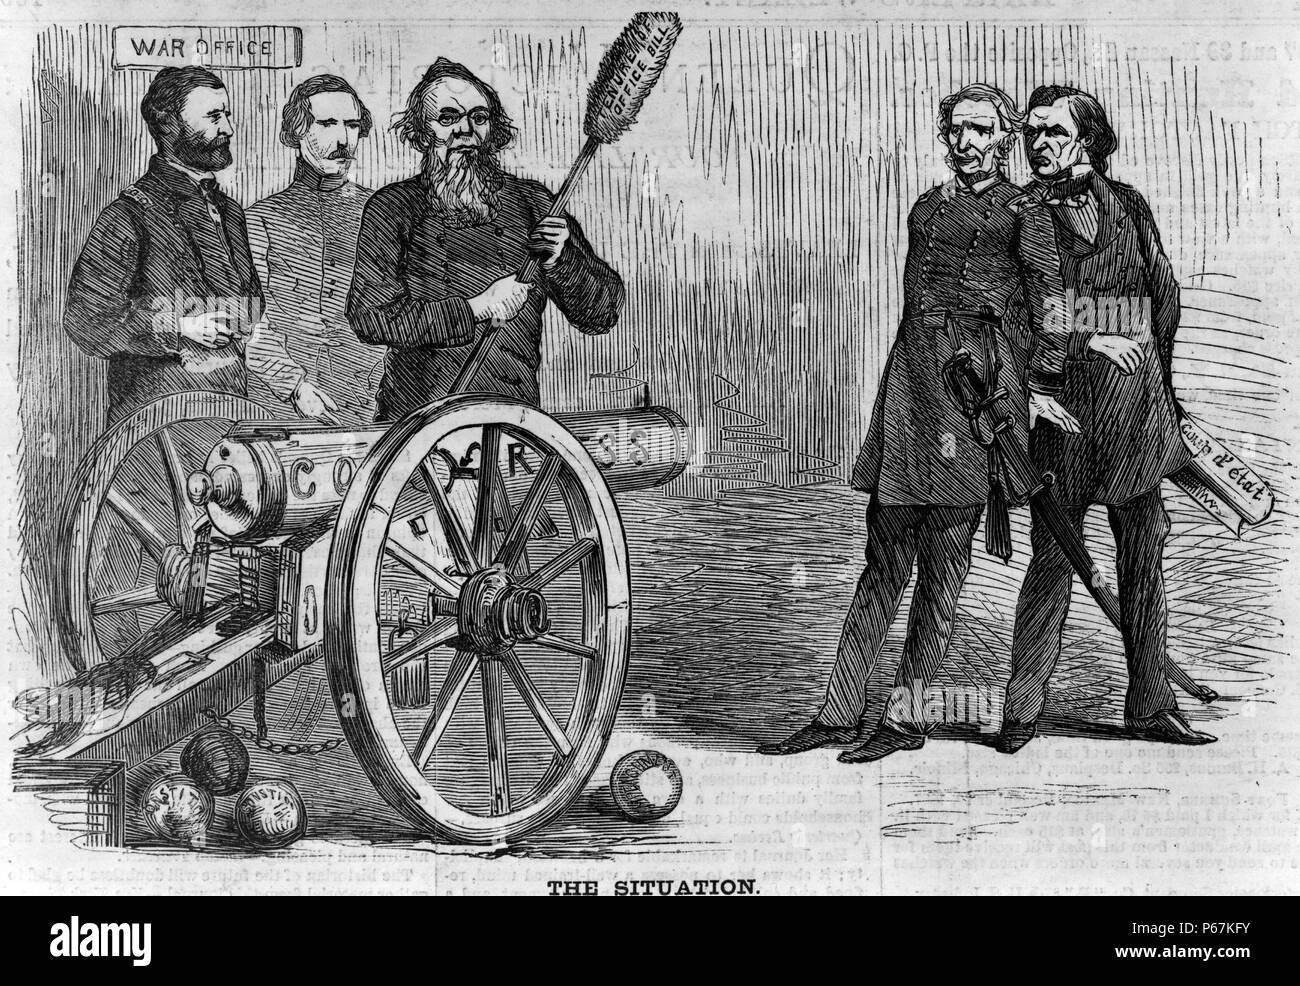 Die Situation "Ulysses Grant und Edwin Stanton in der Nähe von Kanone gekennzeichnet"Kongreß"abzielen, Lorenzo Thomas und Präsident Johnson. Stockfoto